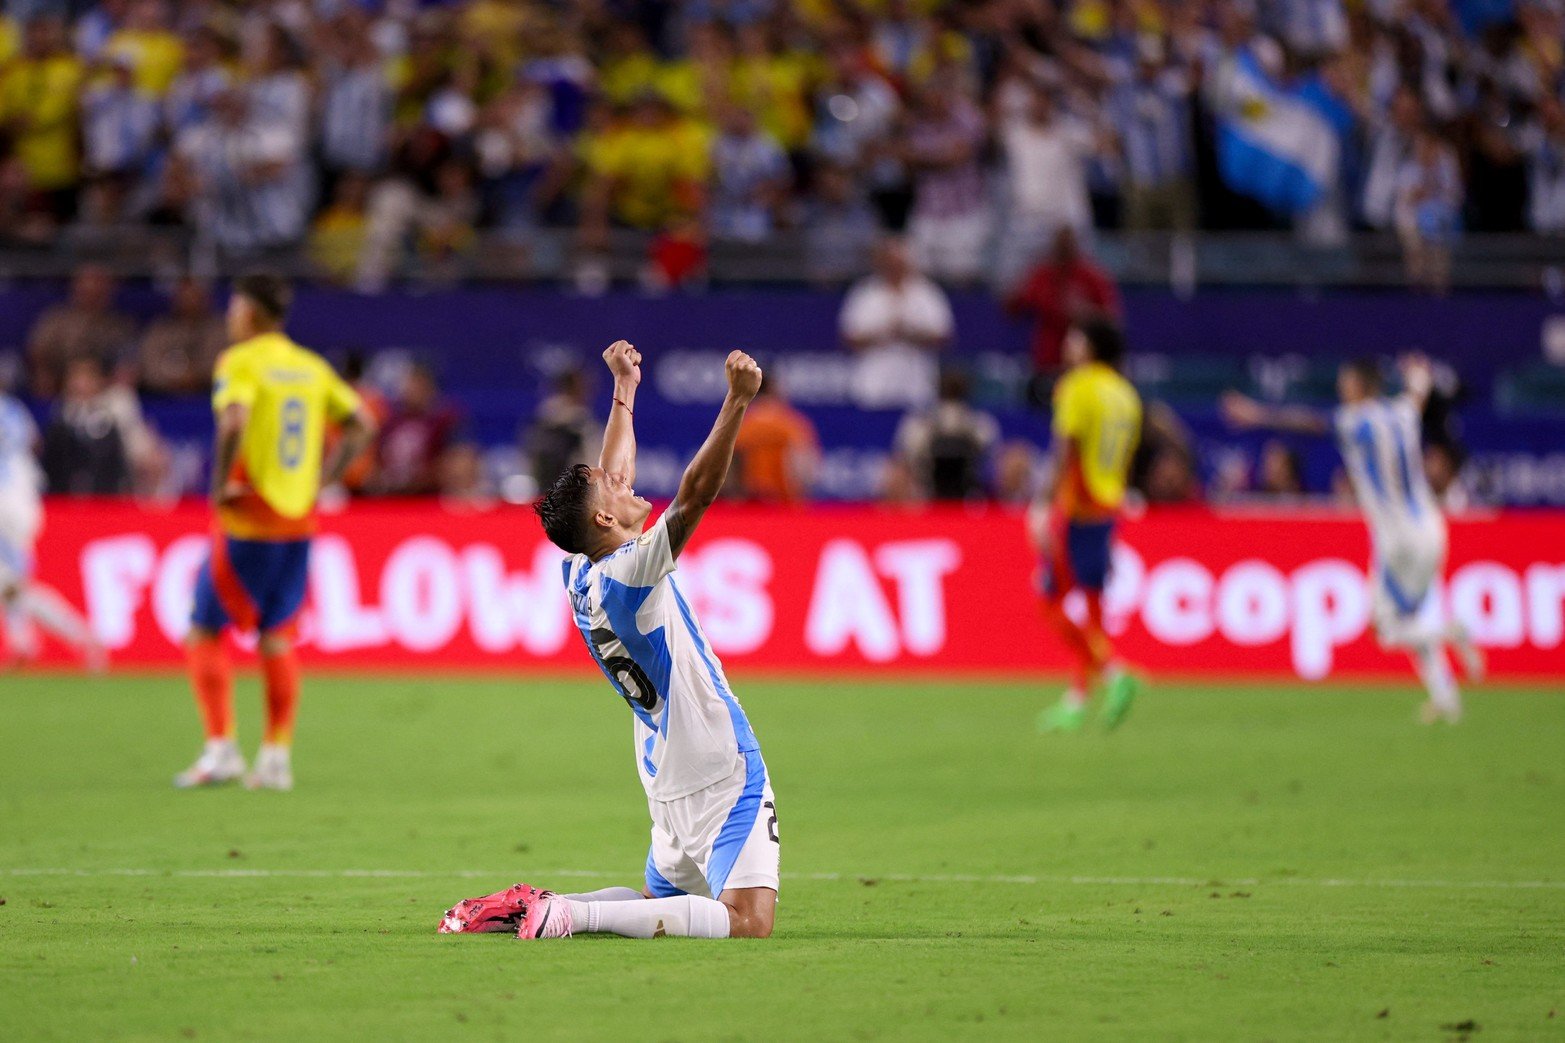 Las mejores imágenes que quedarán guardada en nuestra memoria de un momento histórico de la Selección Argentina de fútbol. 